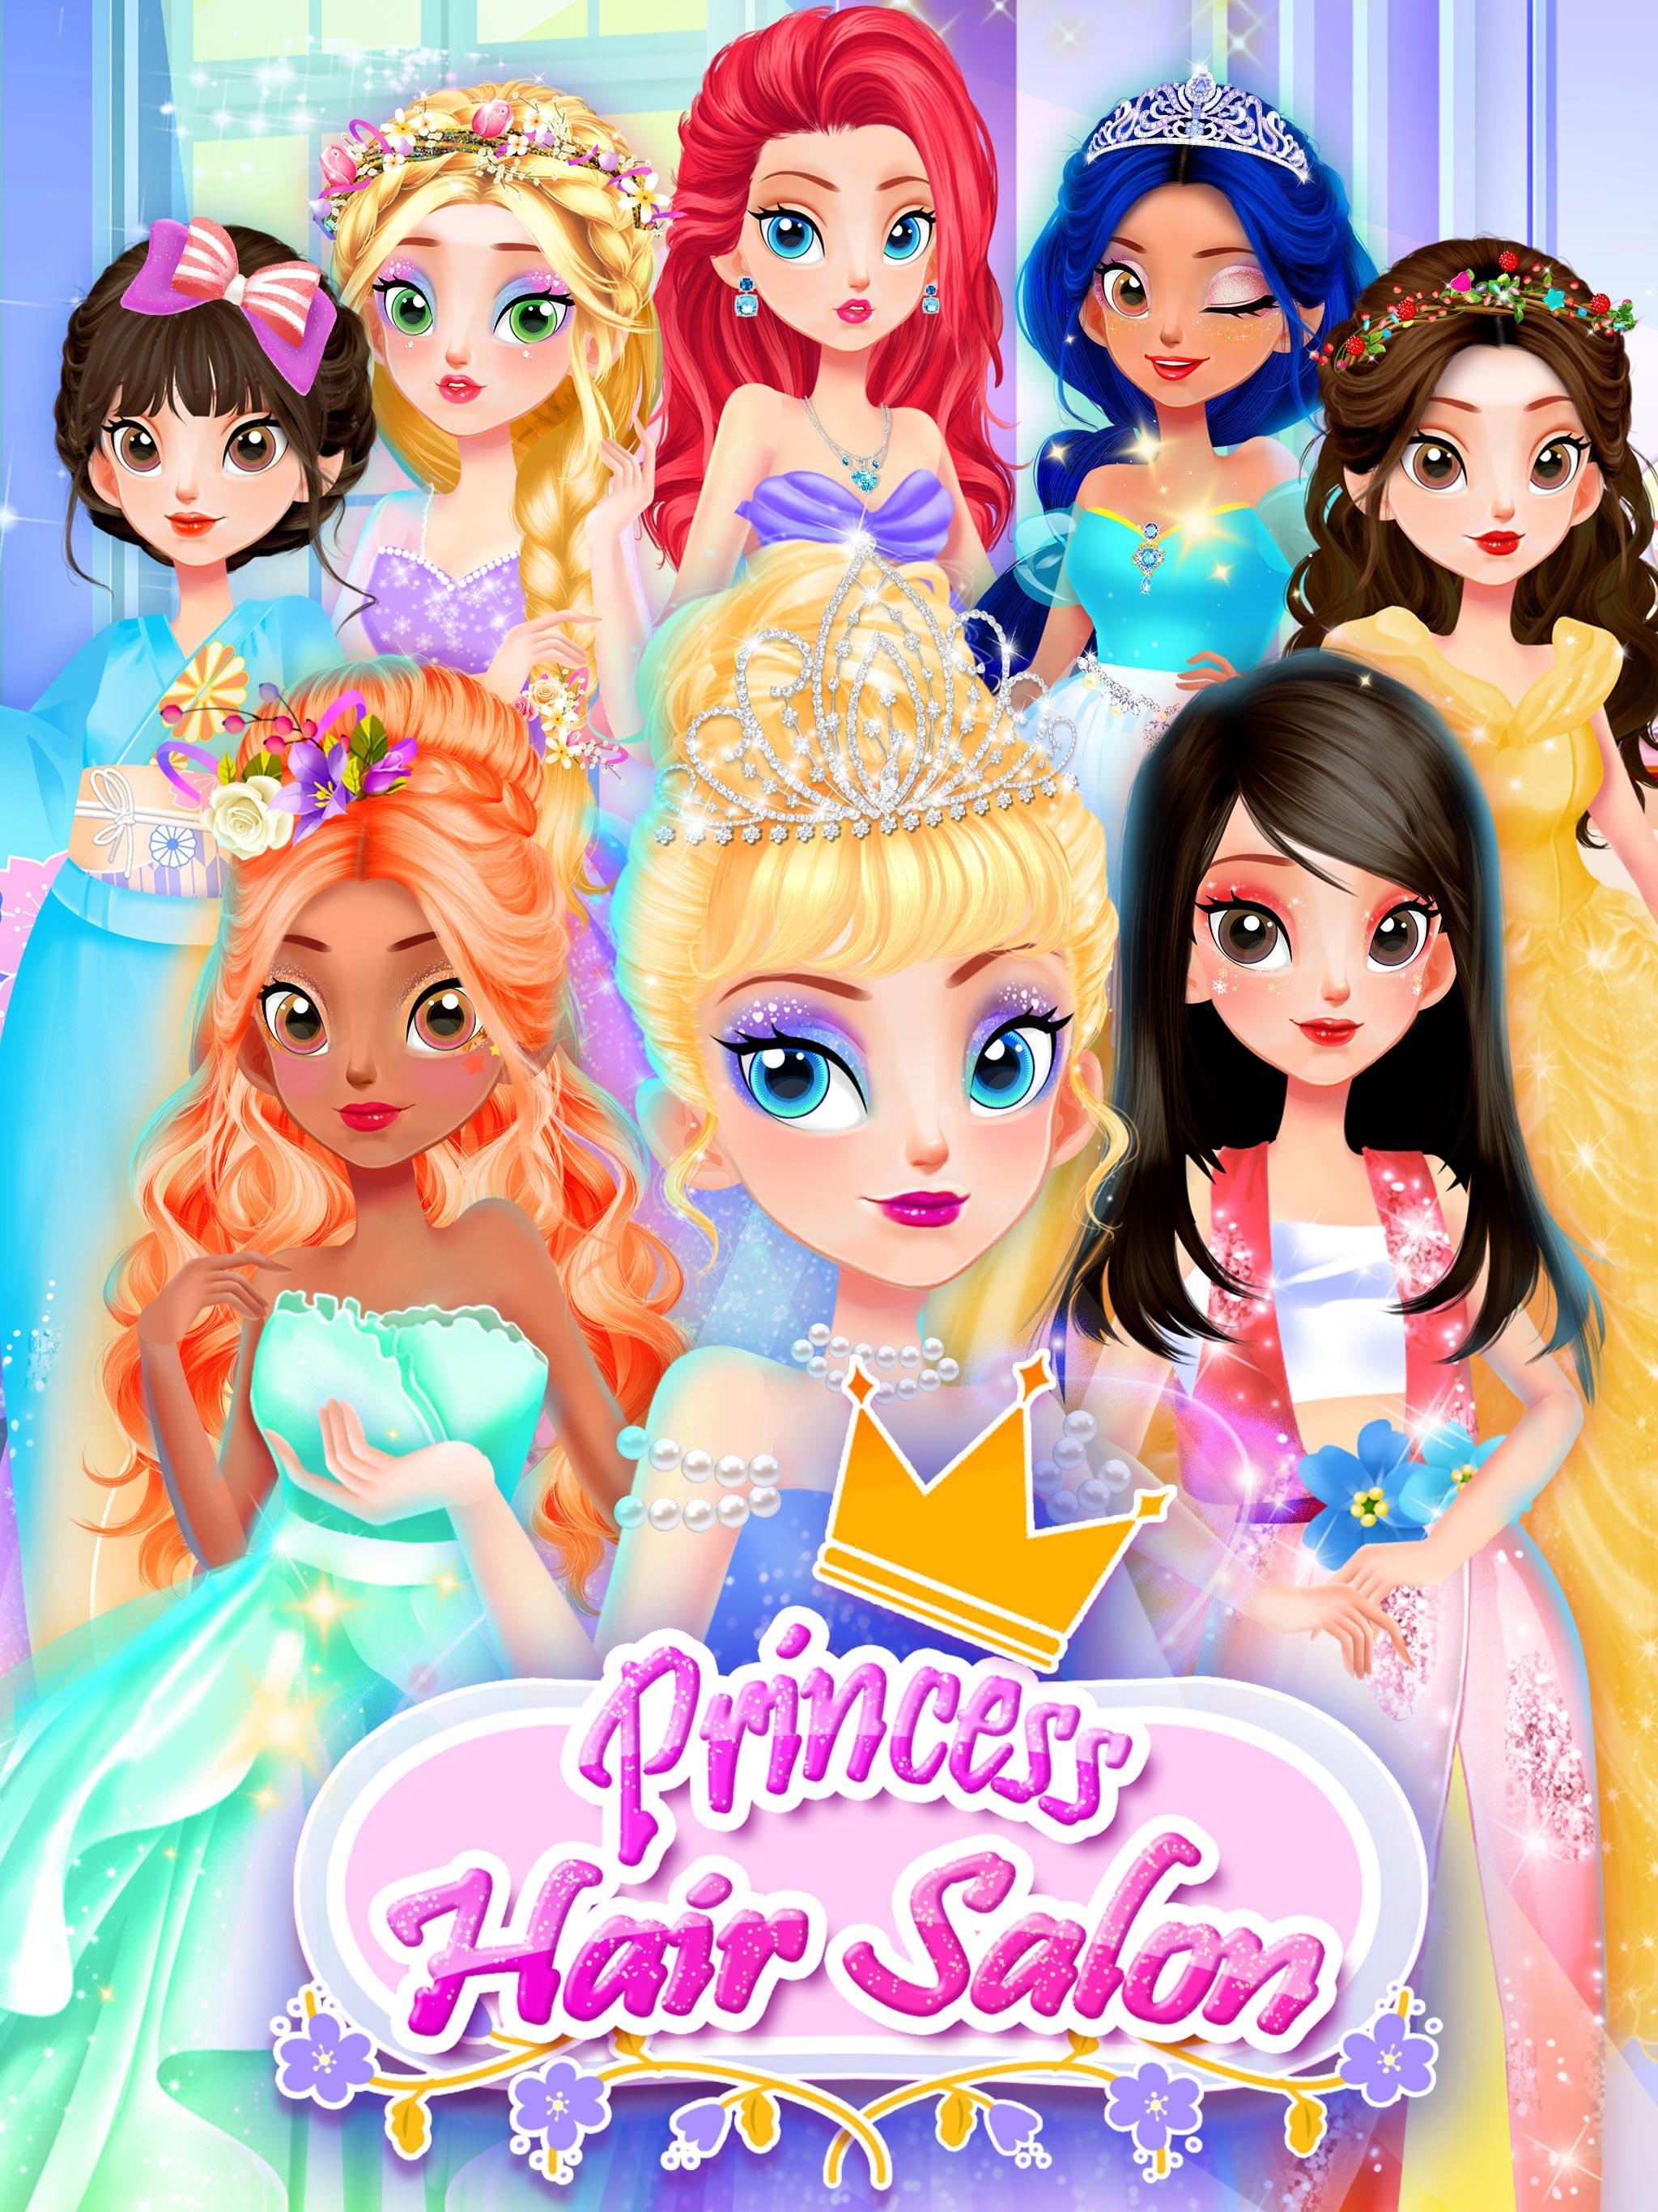 Screenshot 1 of Игры про принцесс: Игры про макияж 2.5